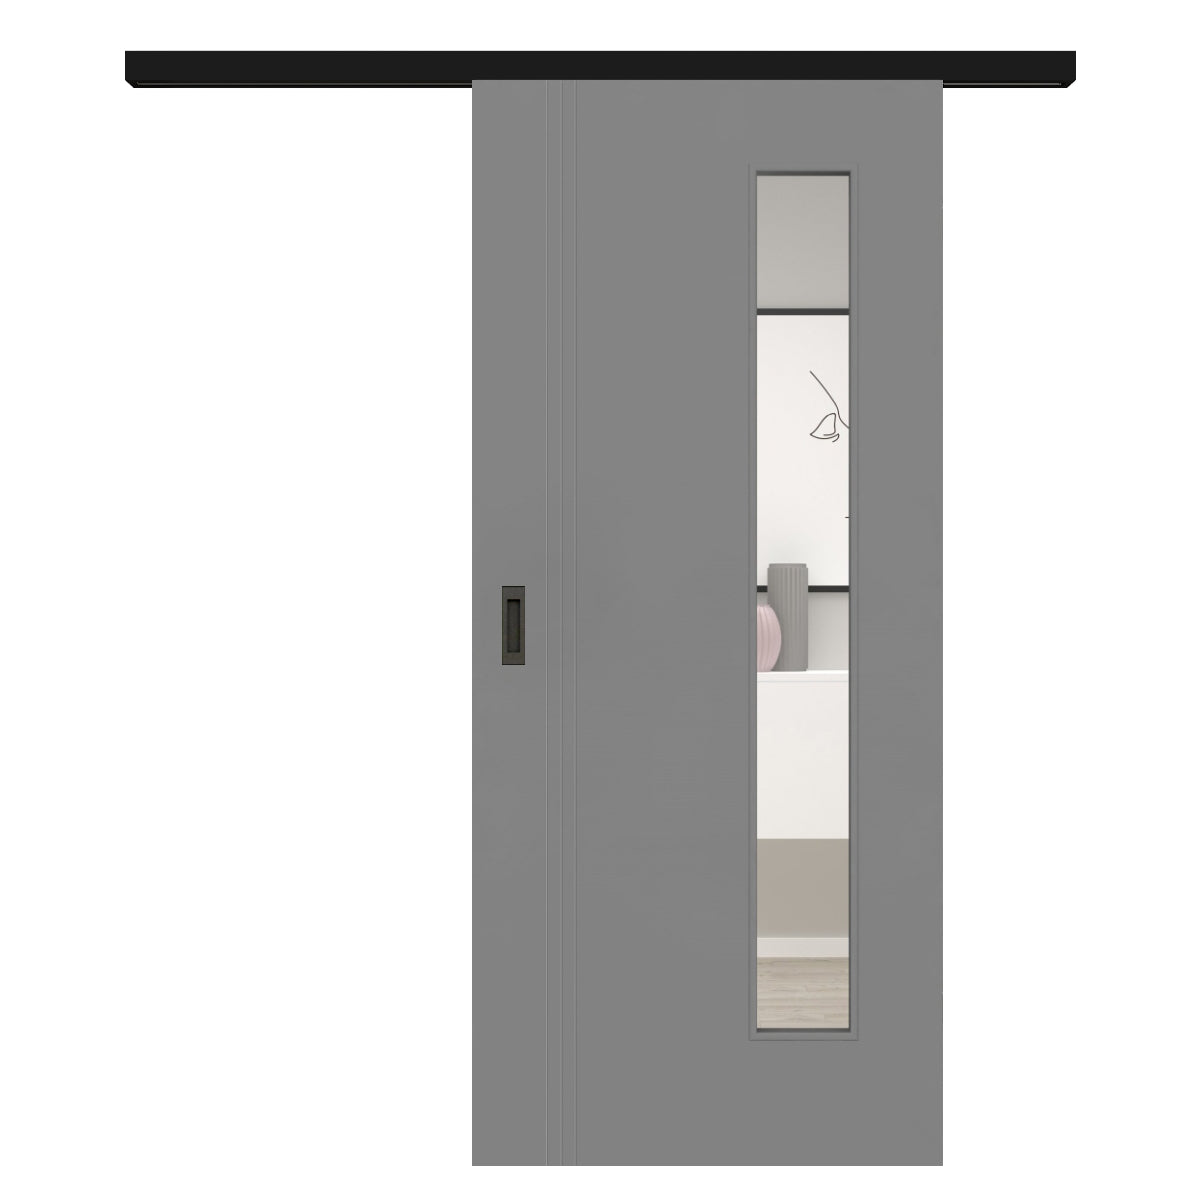 Schiebetür für Set mit schwarzem Laufkasten mit Lichtausschnitt grau 3 Rillen aufrecht Schlosseite - Modell Designtür VS37LAB